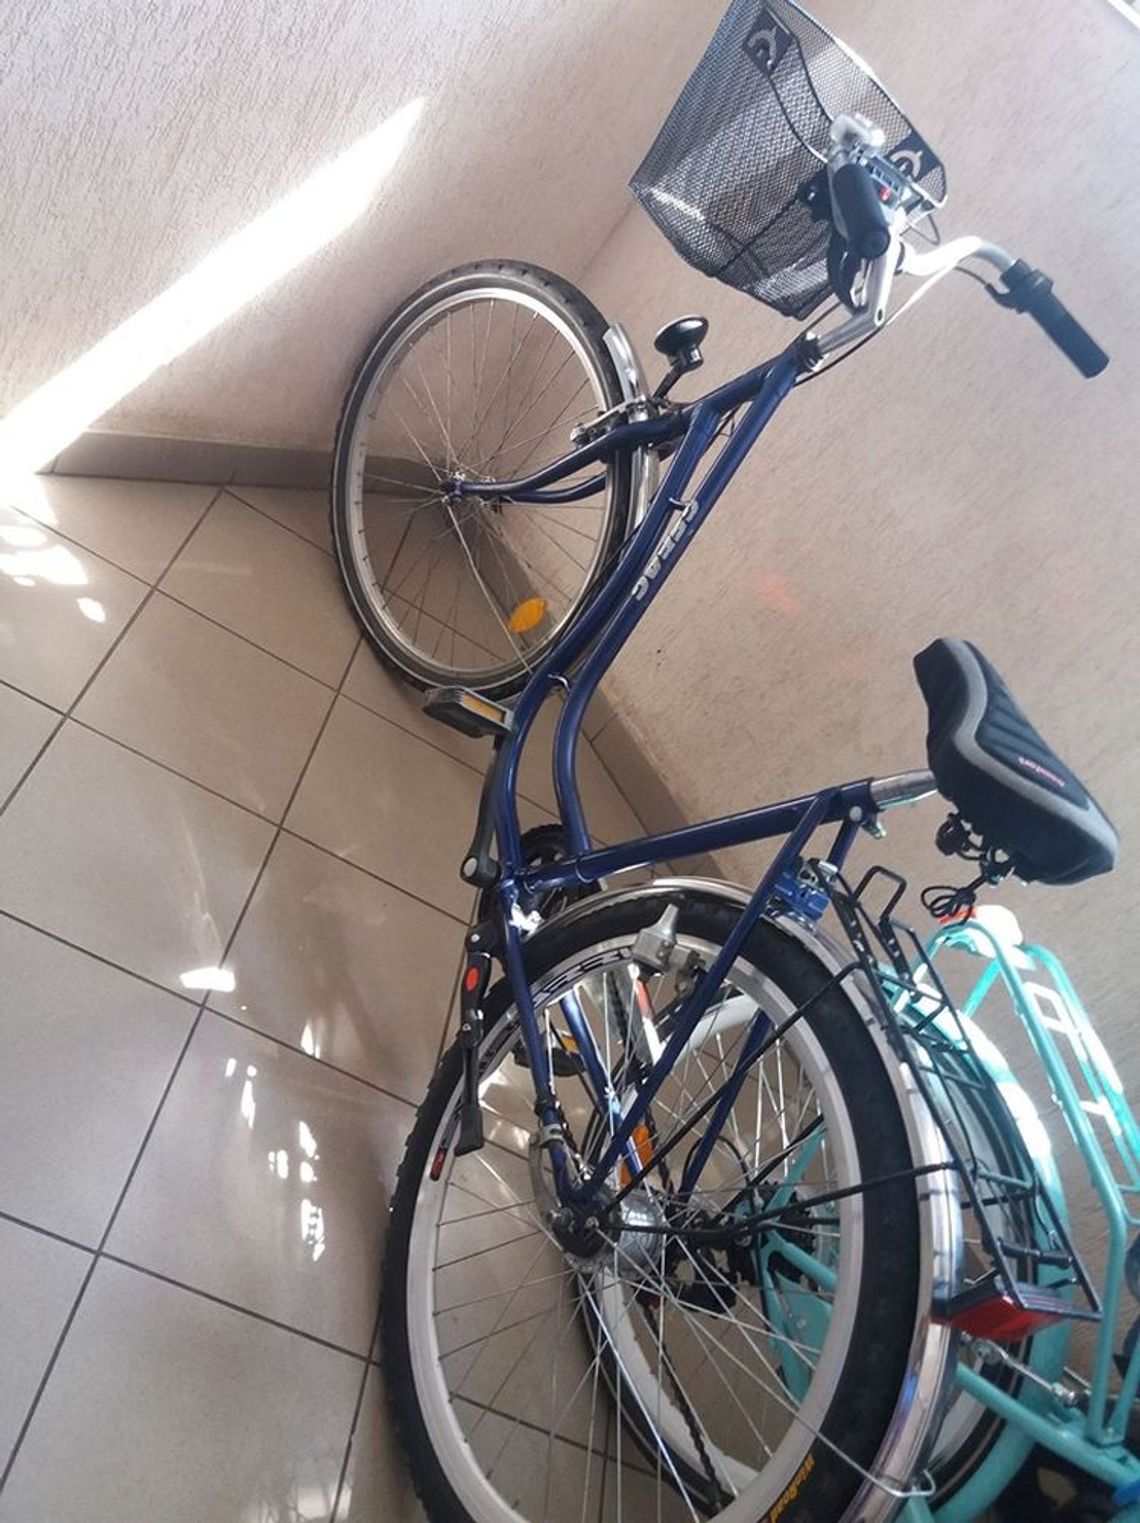 Skradziono rower mojej mamie - skarży się czytelniczka i prosi o pomoc